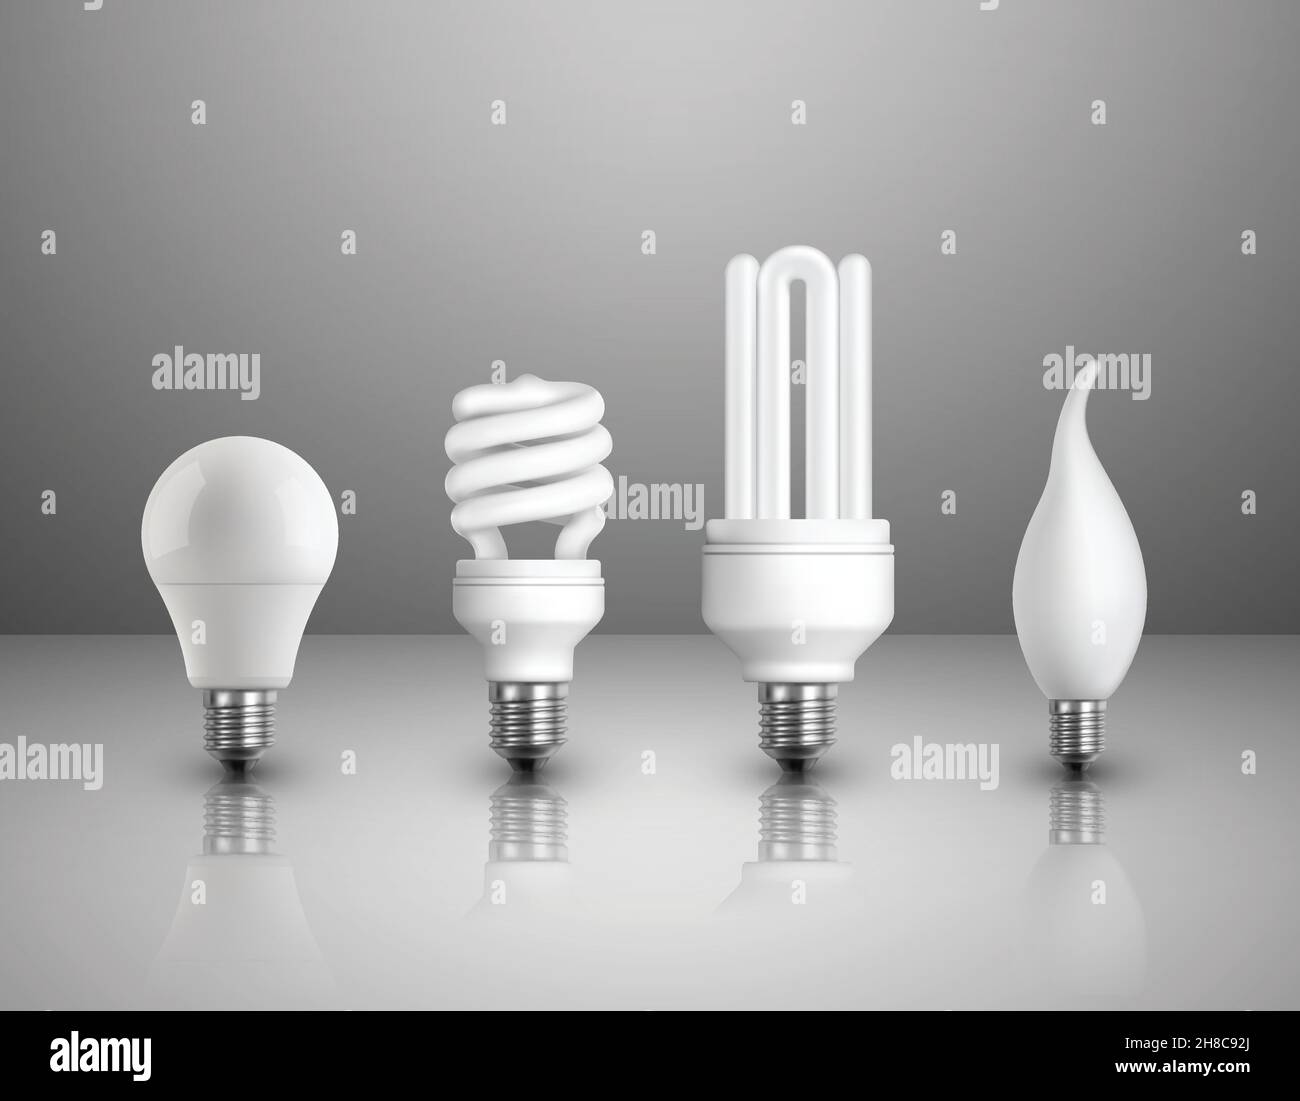 Realistische elektrische Glühbirnen Satz von verschiedenen Arten Konstruktionen und Formen Auf glänzendem Hintergrund isolierte Vektorgrafik Stock Vektor